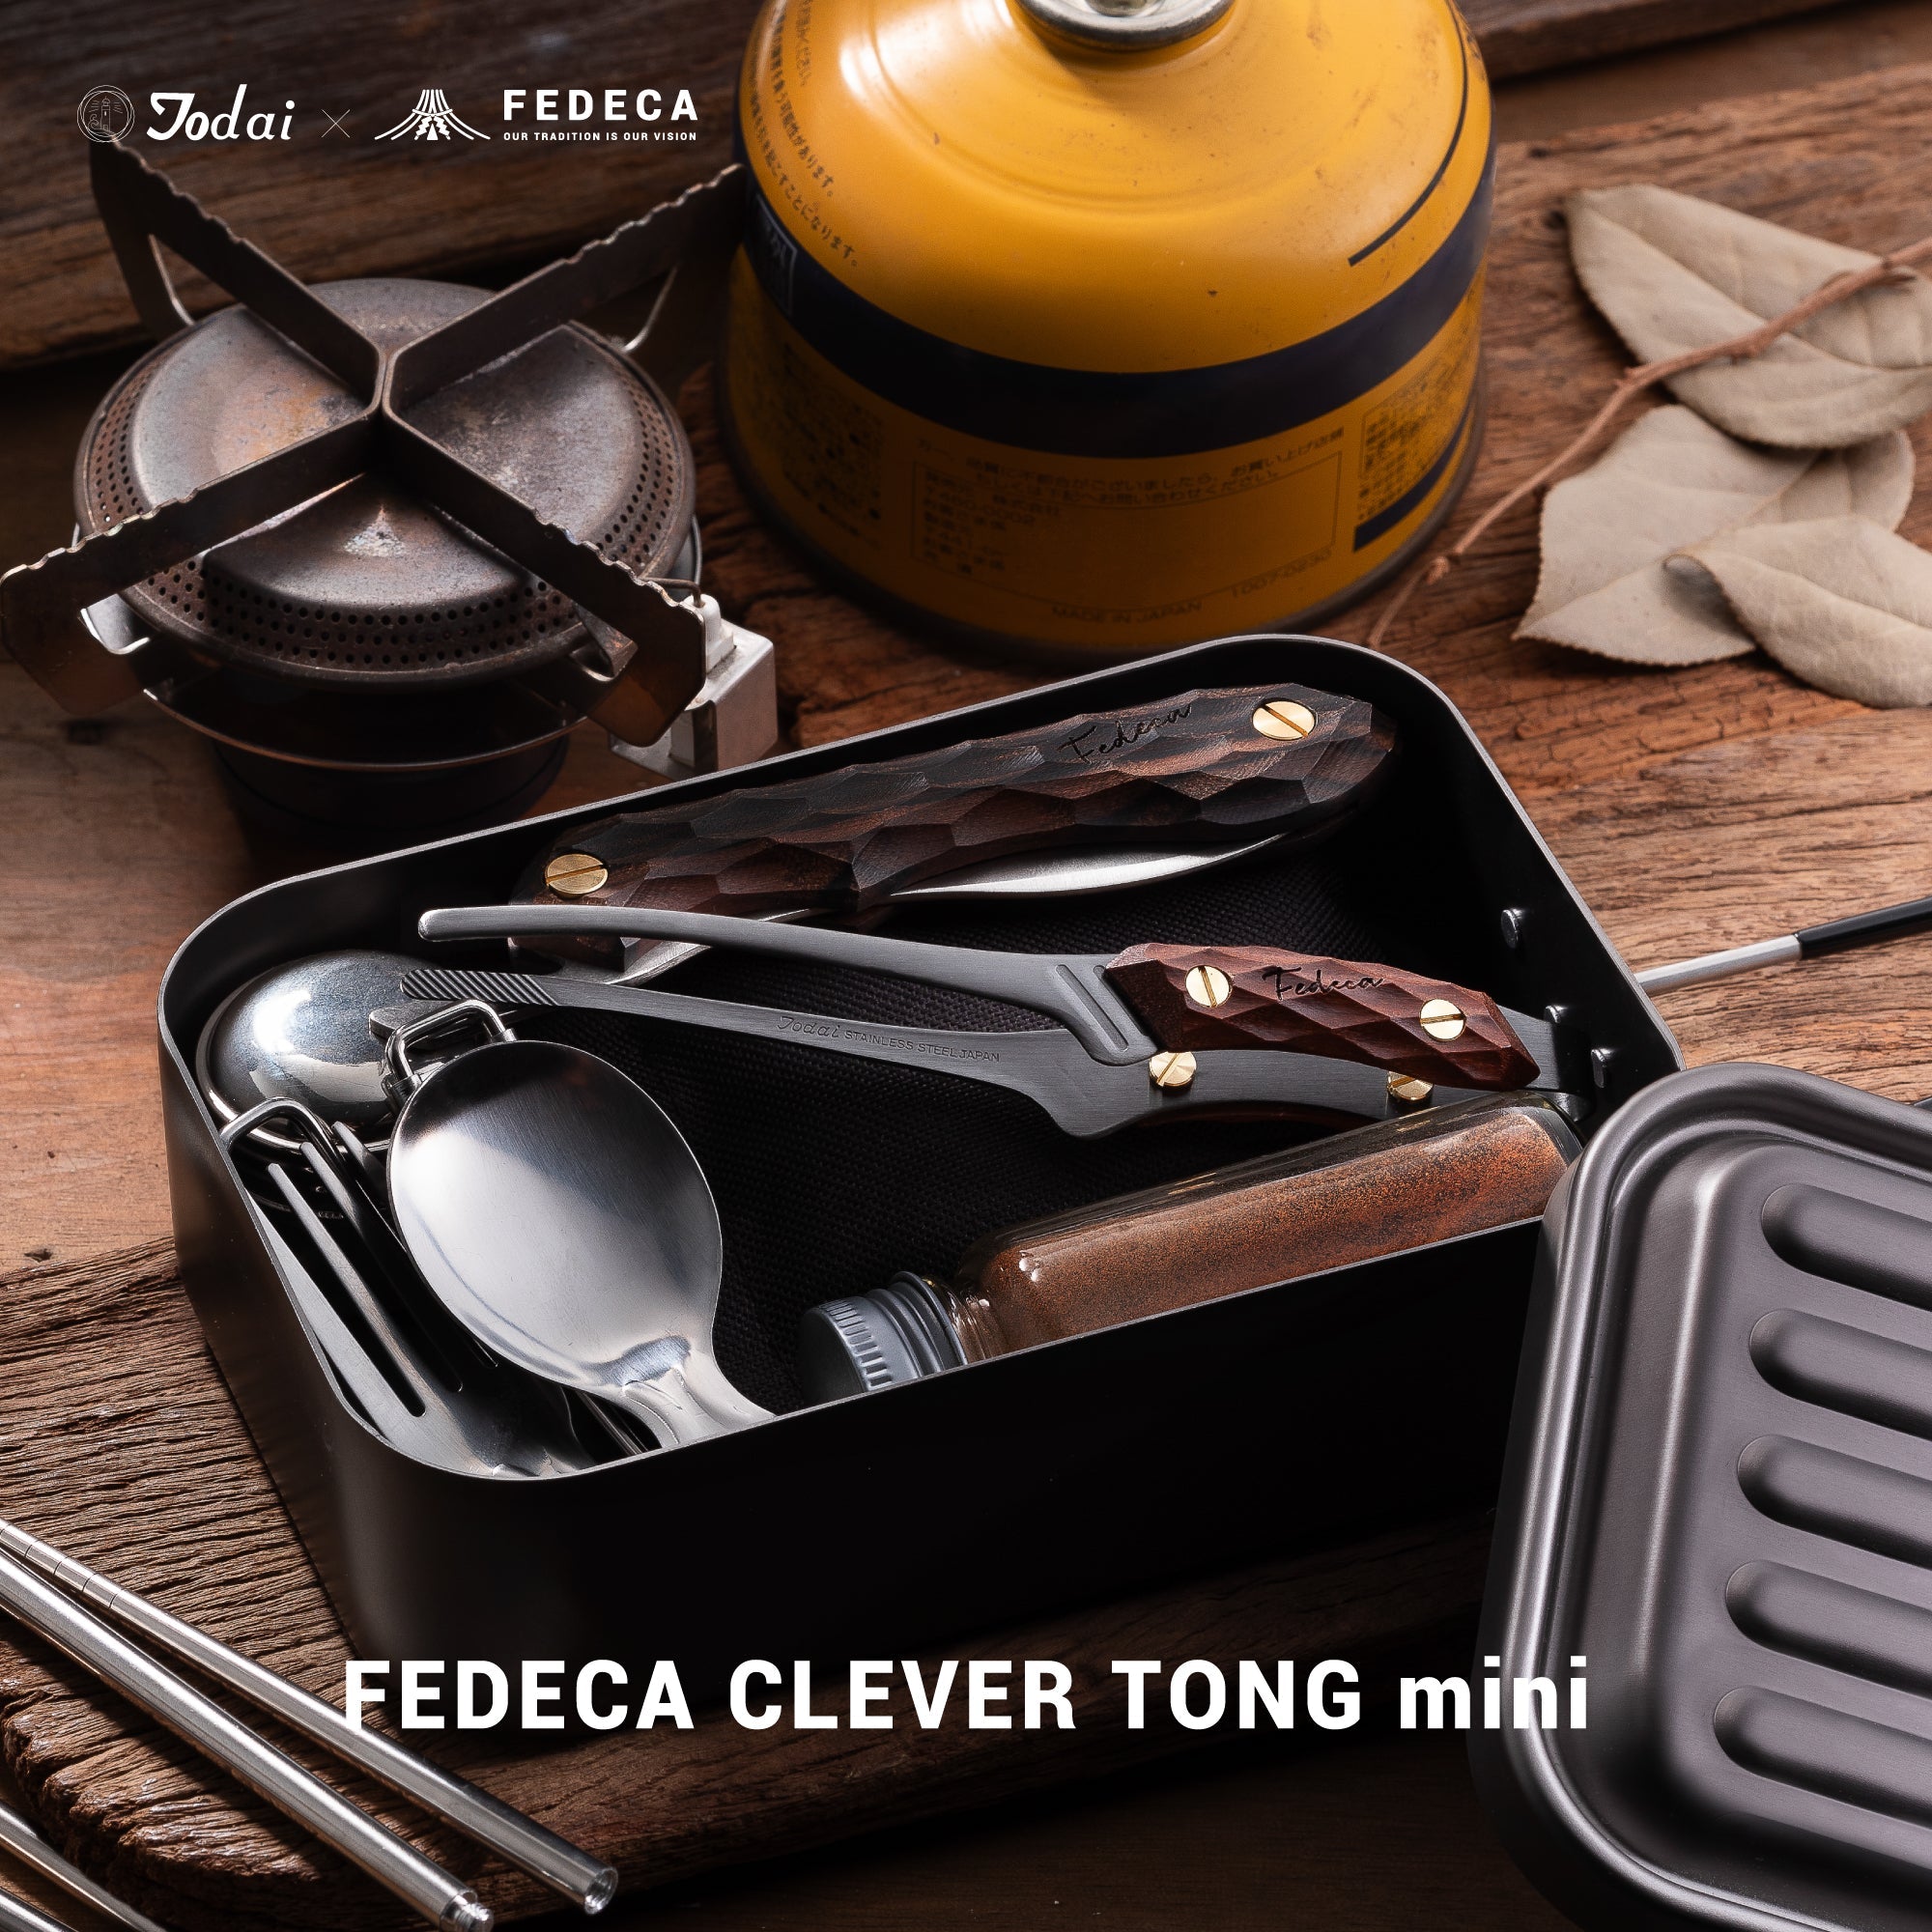 【予約】FEDECA CLEVER TONG mini リップルブラック 4,620円 【5月下旬以降順次発送 】